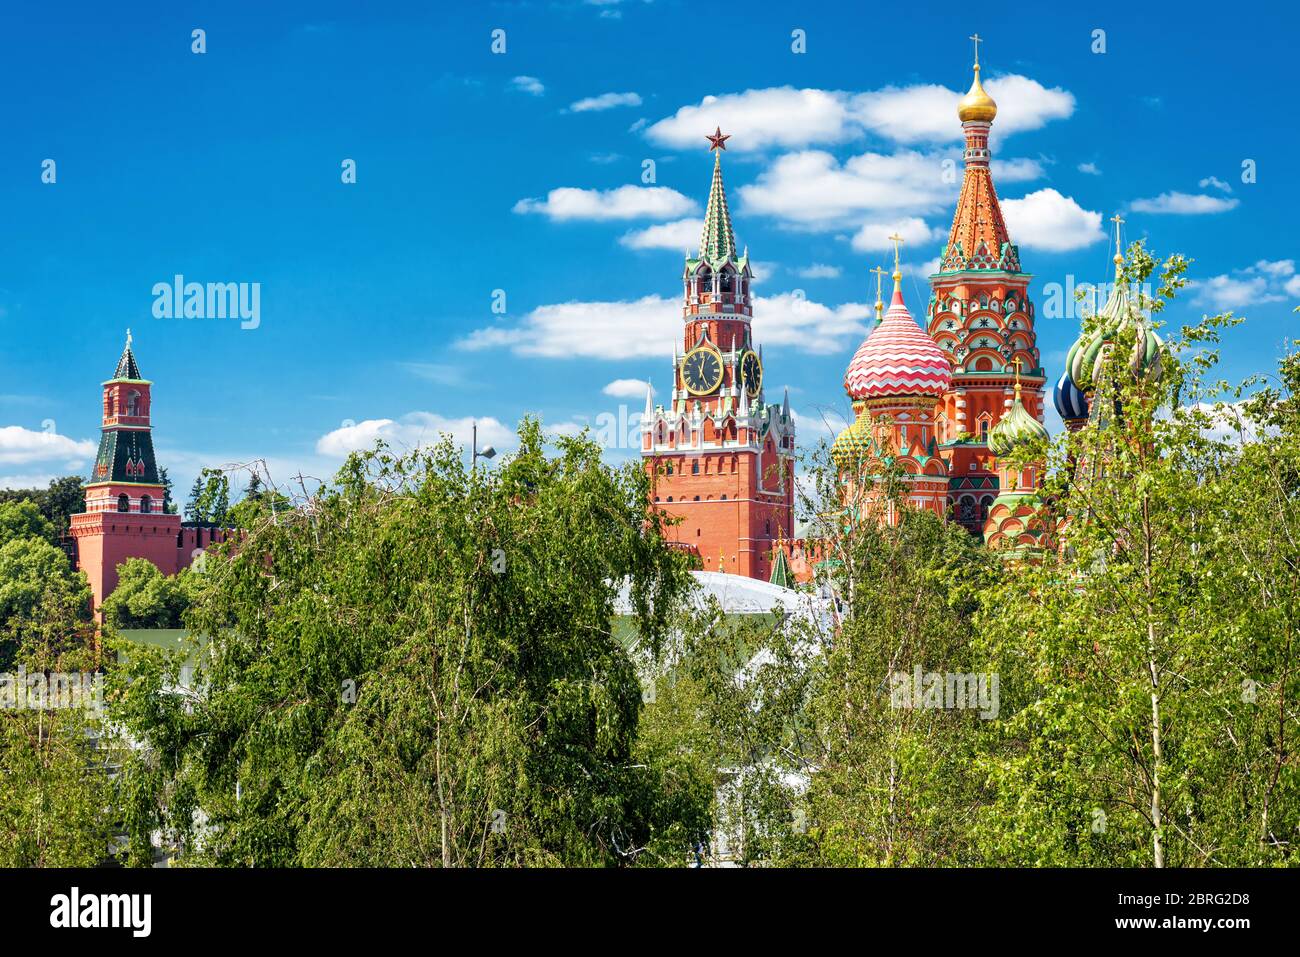 Basilius-Kathedrale und Moskauer Kreml, Russland. Dieser Ort ist die wichtigste Touristenattraktion von Moskau. Schöne Aussicht auf den Moskauer Kreml in summe Stockfoto